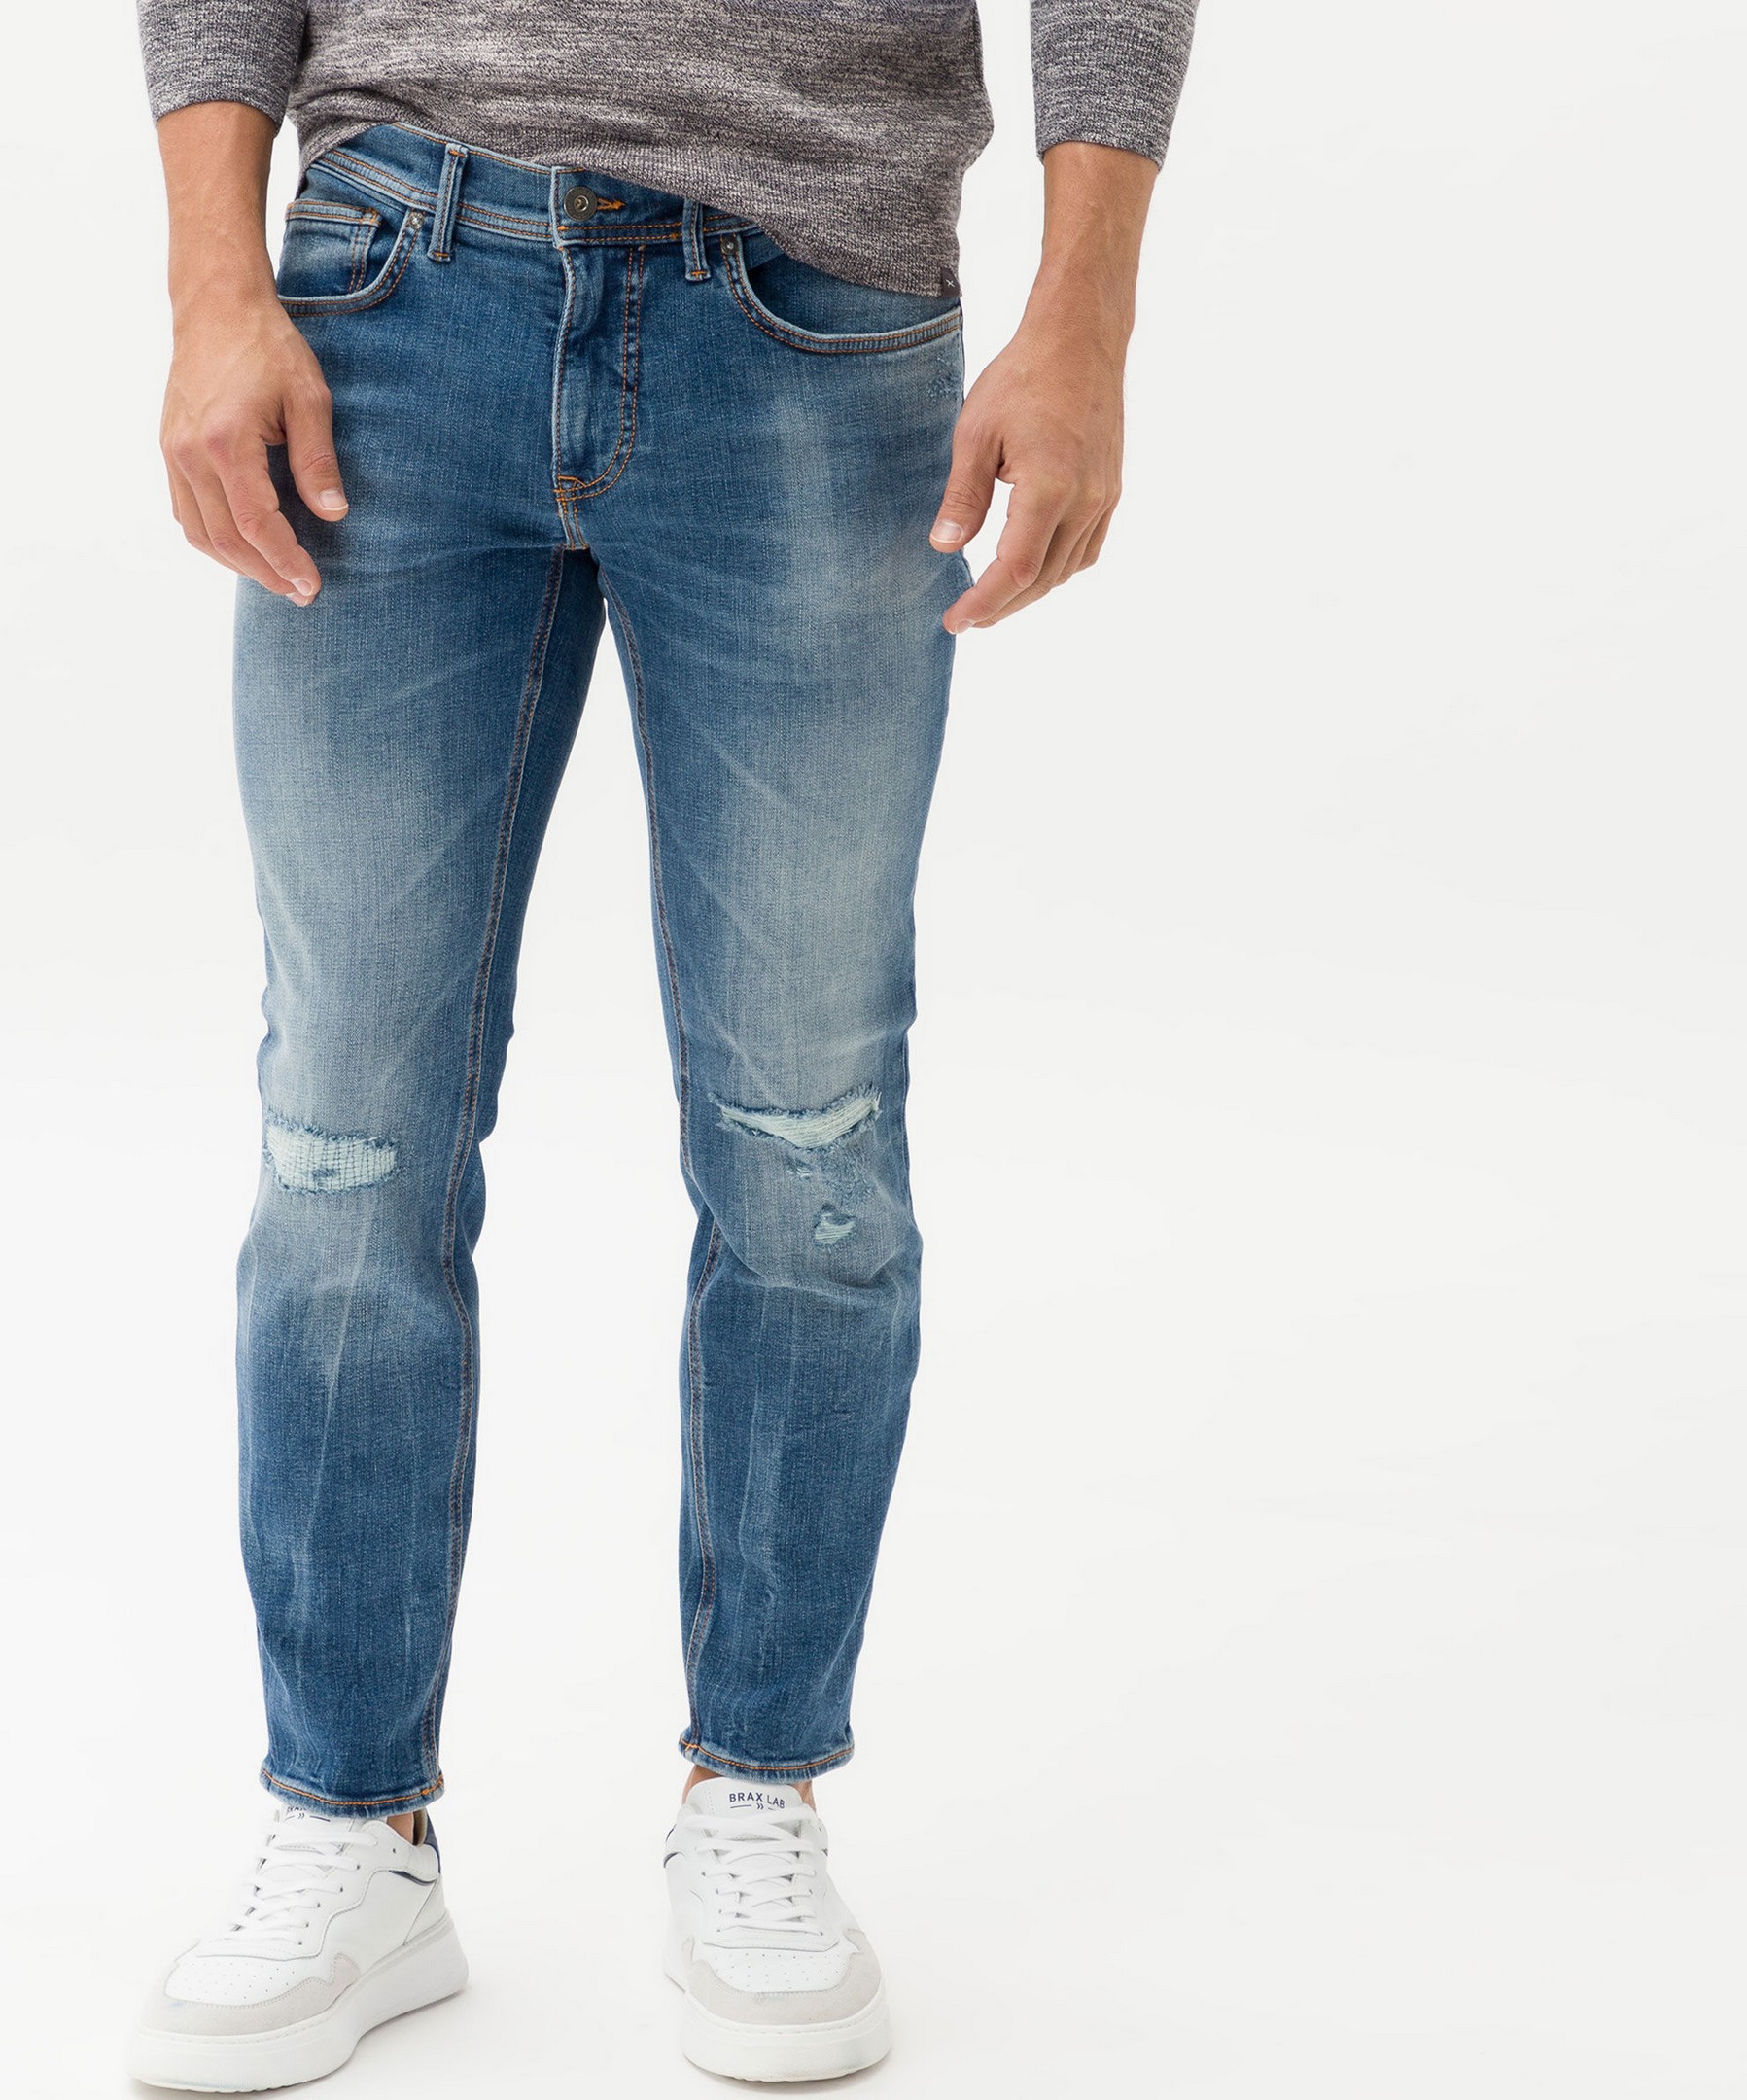 Brax Chris 5-Pocket Vintage Denim Hi-Flex Superstretch Blue Planet Jeans  Blue Indigo Destroyed | Jan Rozing Men\'s Fashion